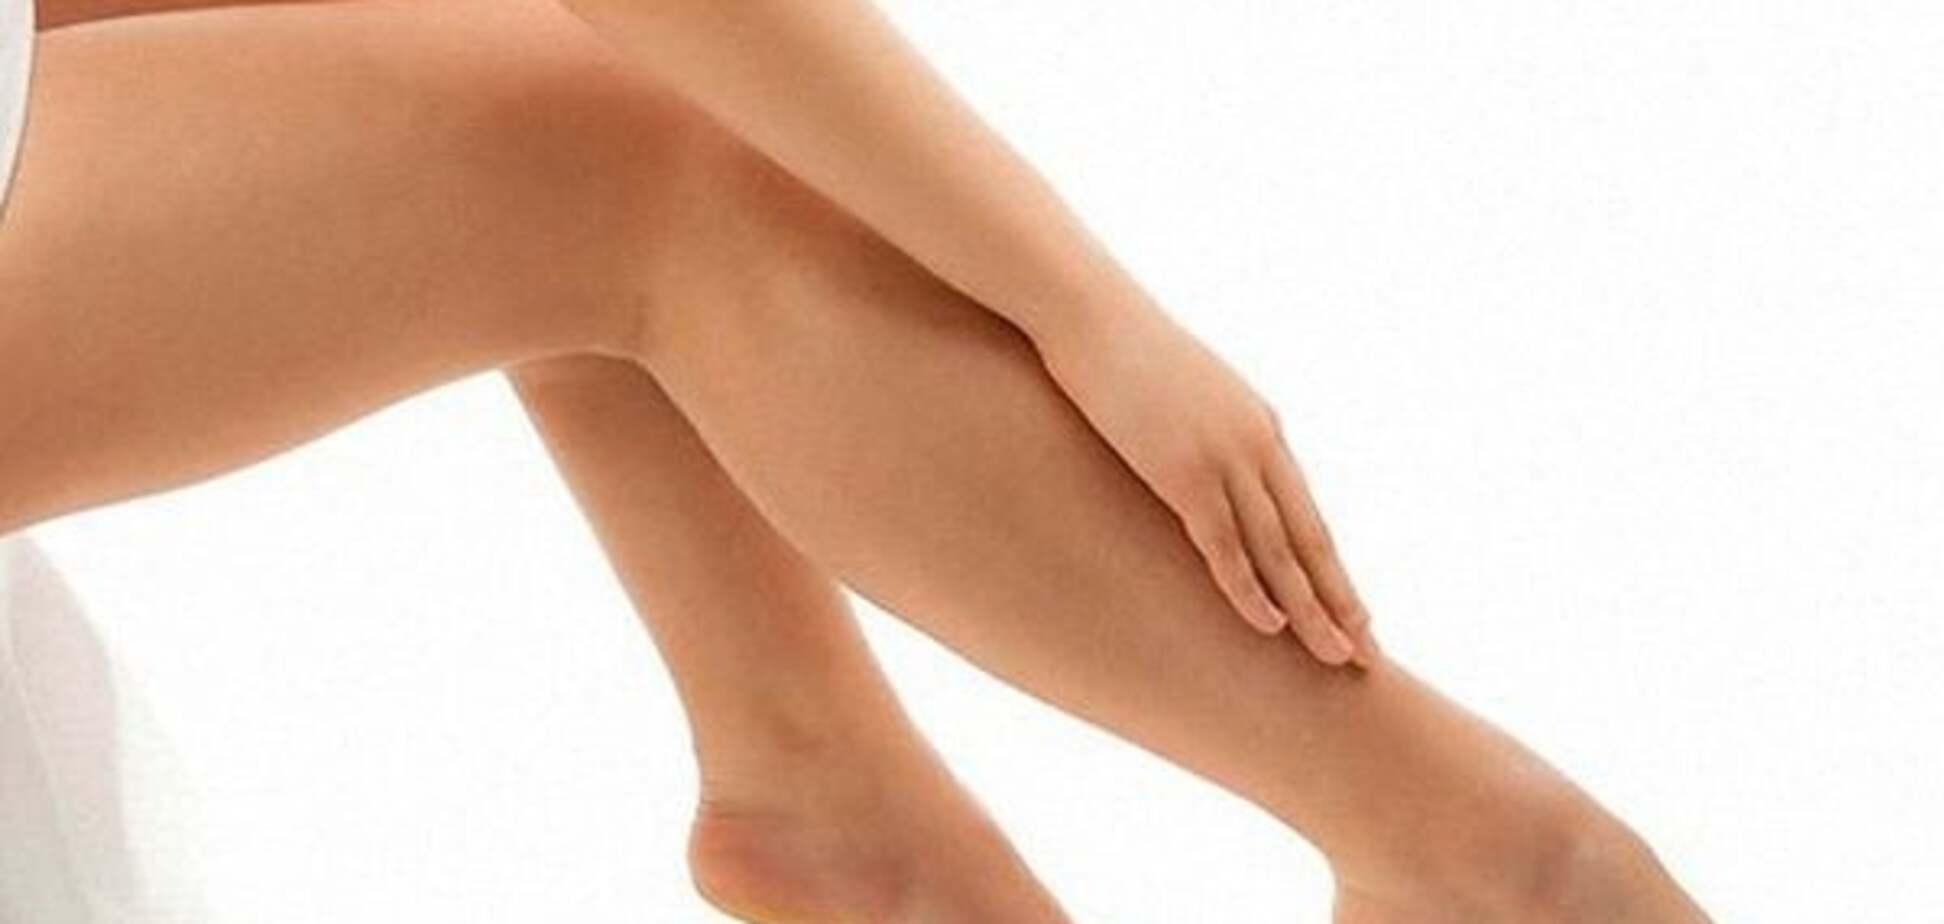 О чем могут говорить судороги в ногах: опасные симптомы